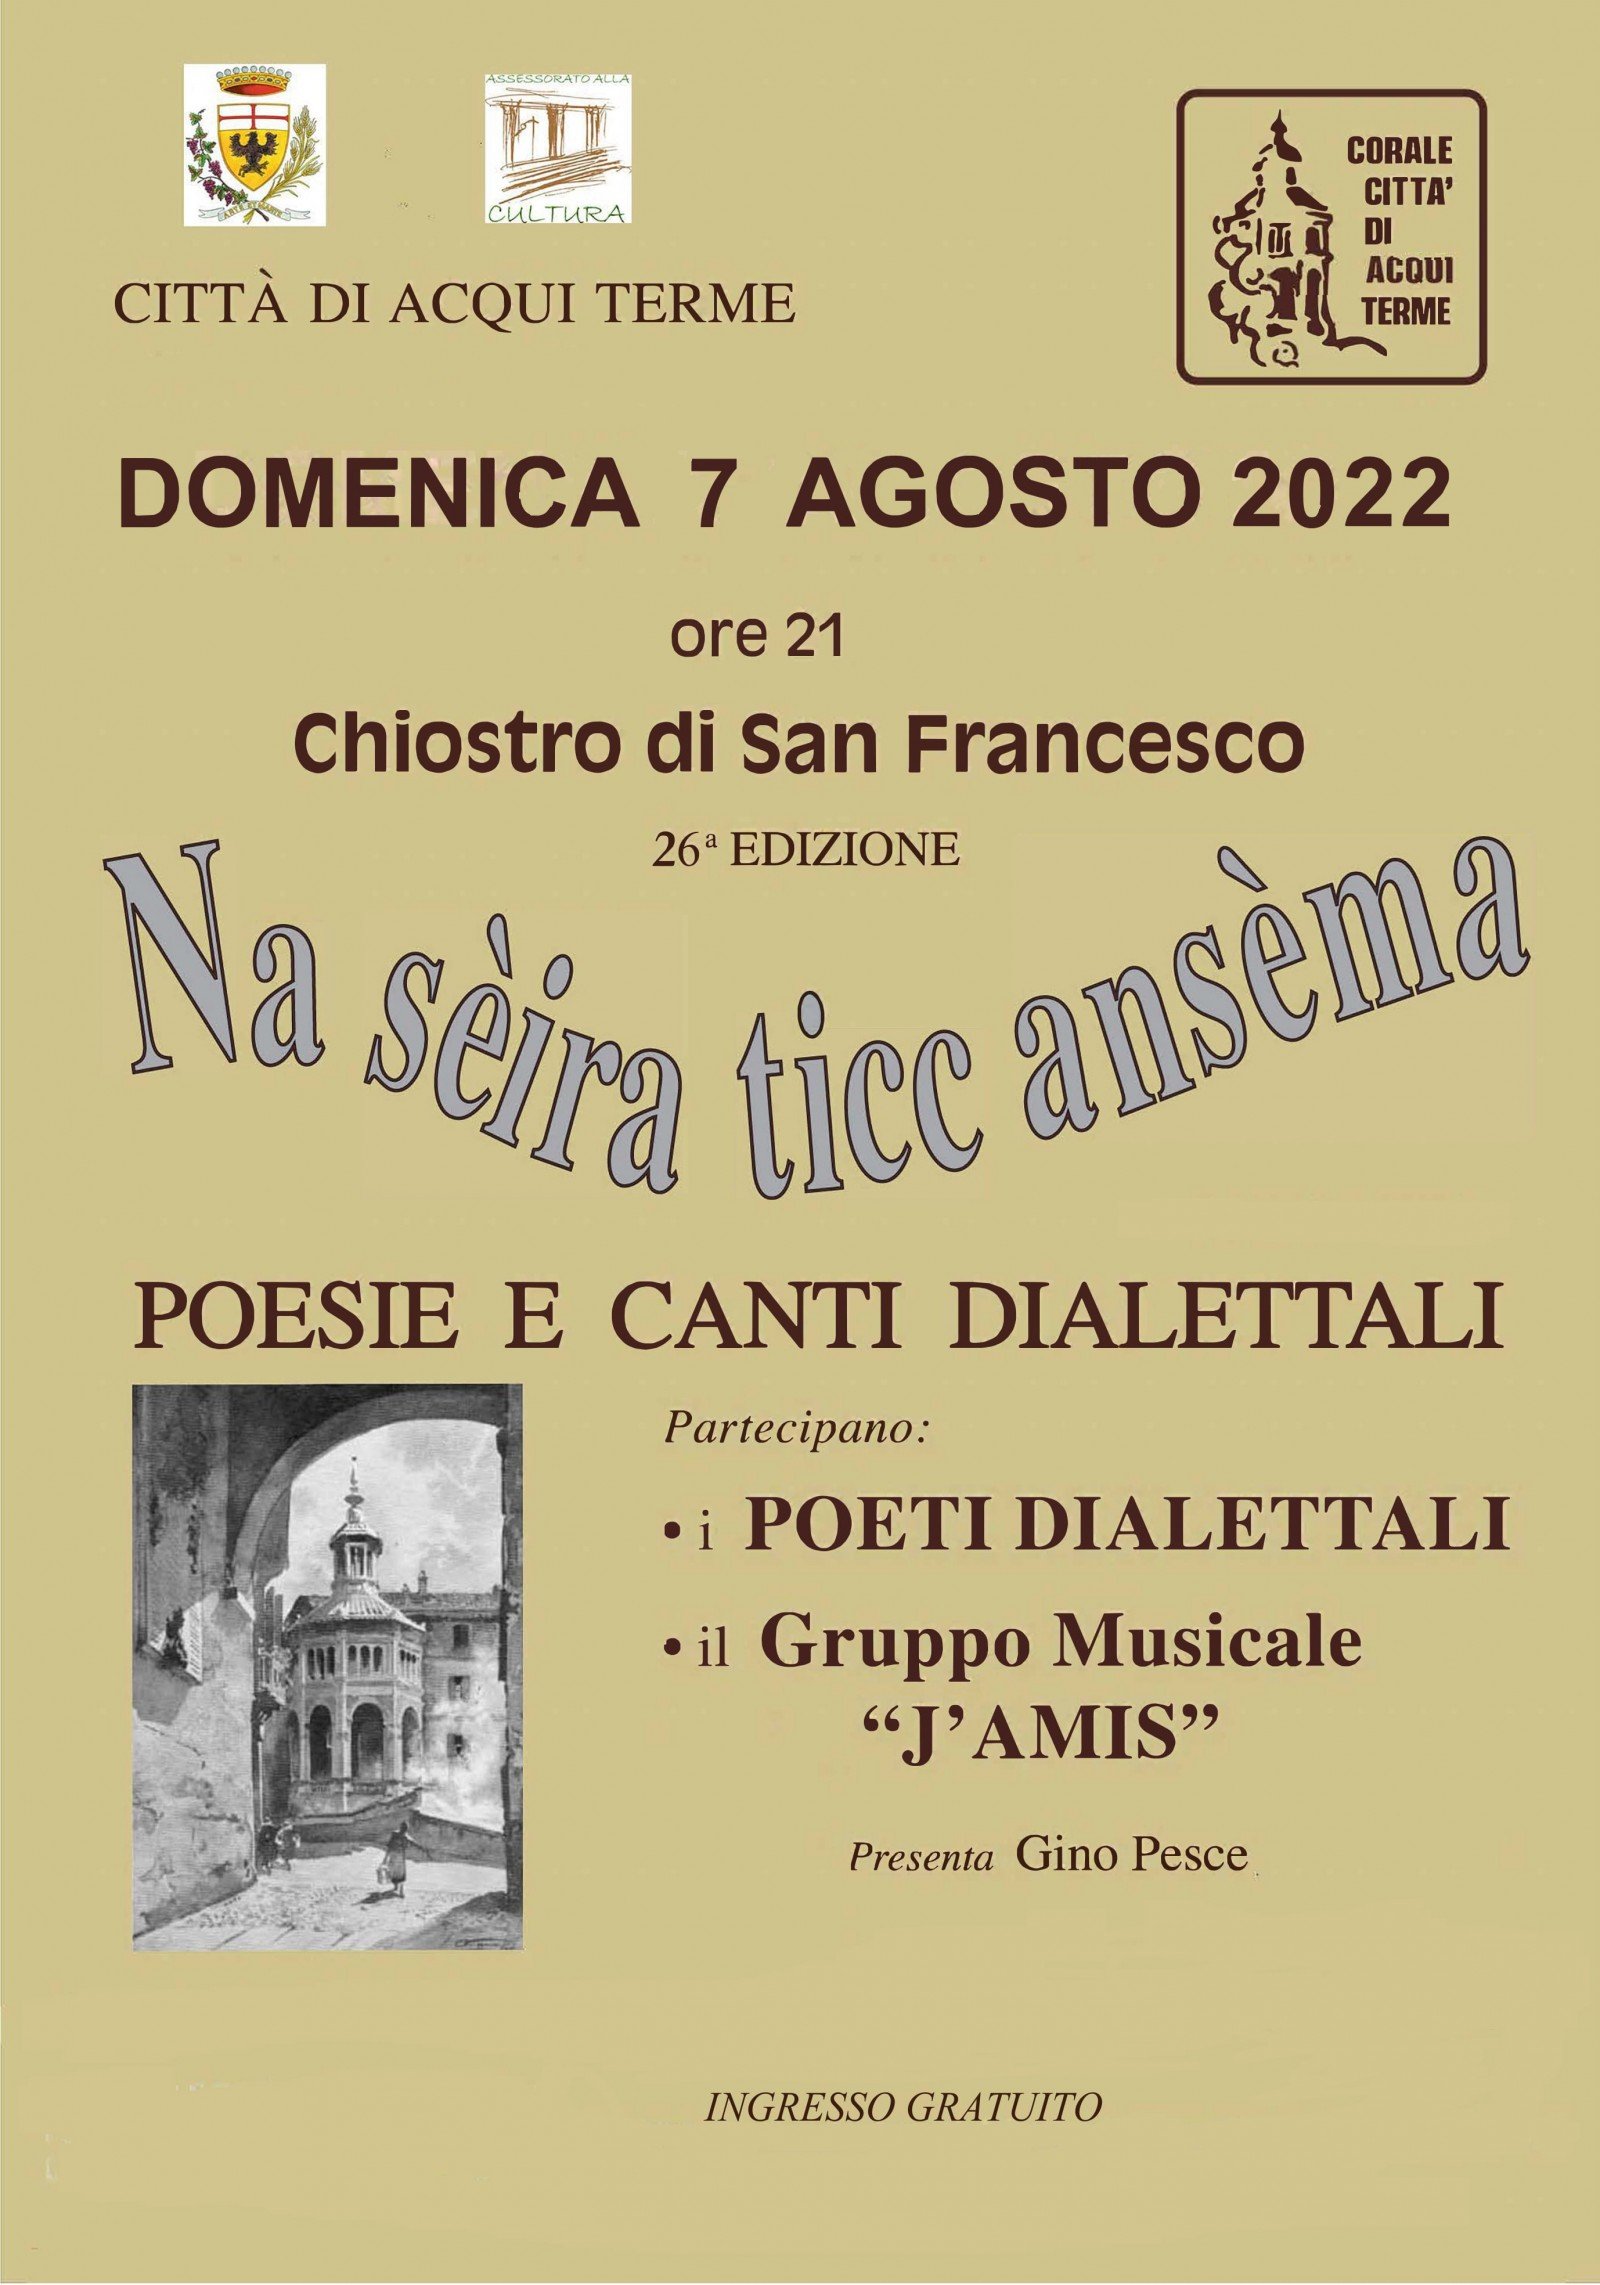 Domenica 7 agosto ad Acqui Terme poesie e canti dialettali con “Na sèira ticc ansèma”